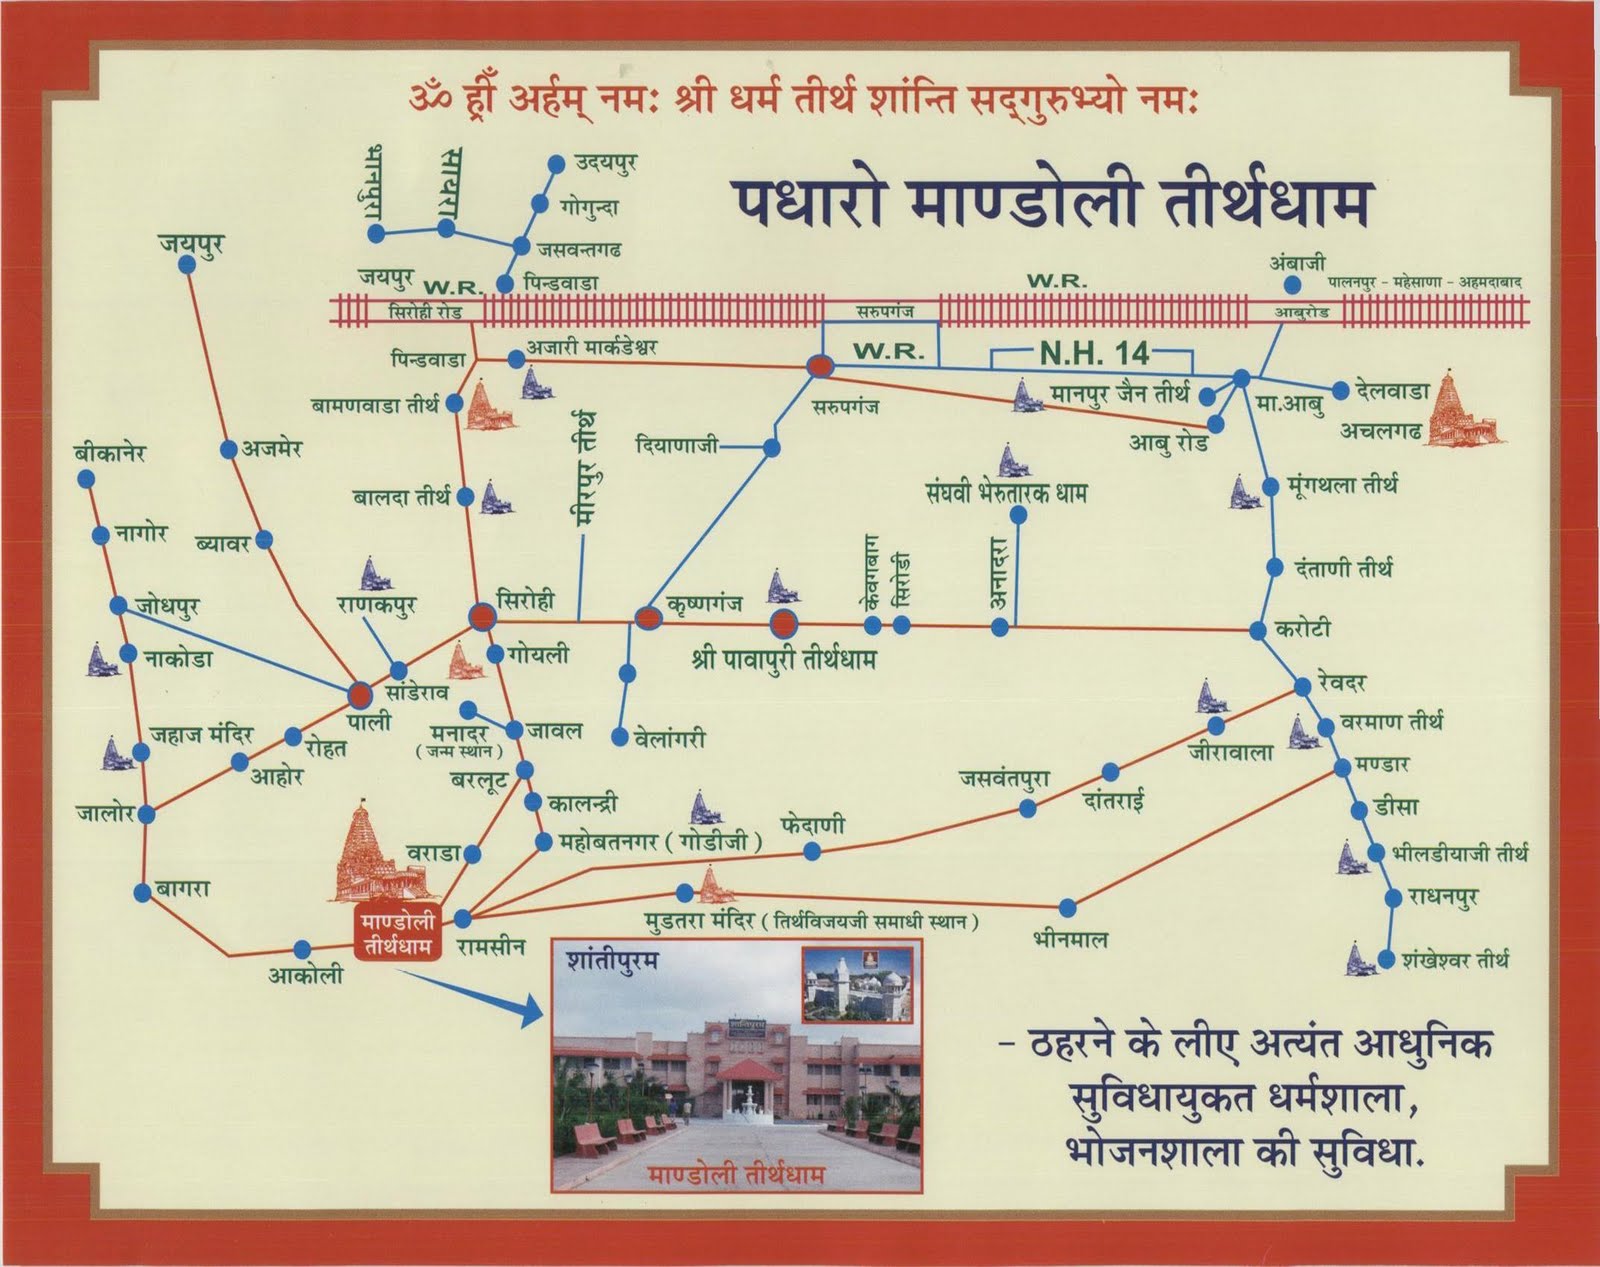 http://2.bp.blogspot.com/-4O1RUOO5hSs/Tb2Kz2_-1GI/AAAAAAAAC5A/TRWe3GyIu2A/s1600/Rajasthan_Jain_Tirth_Map.jpg